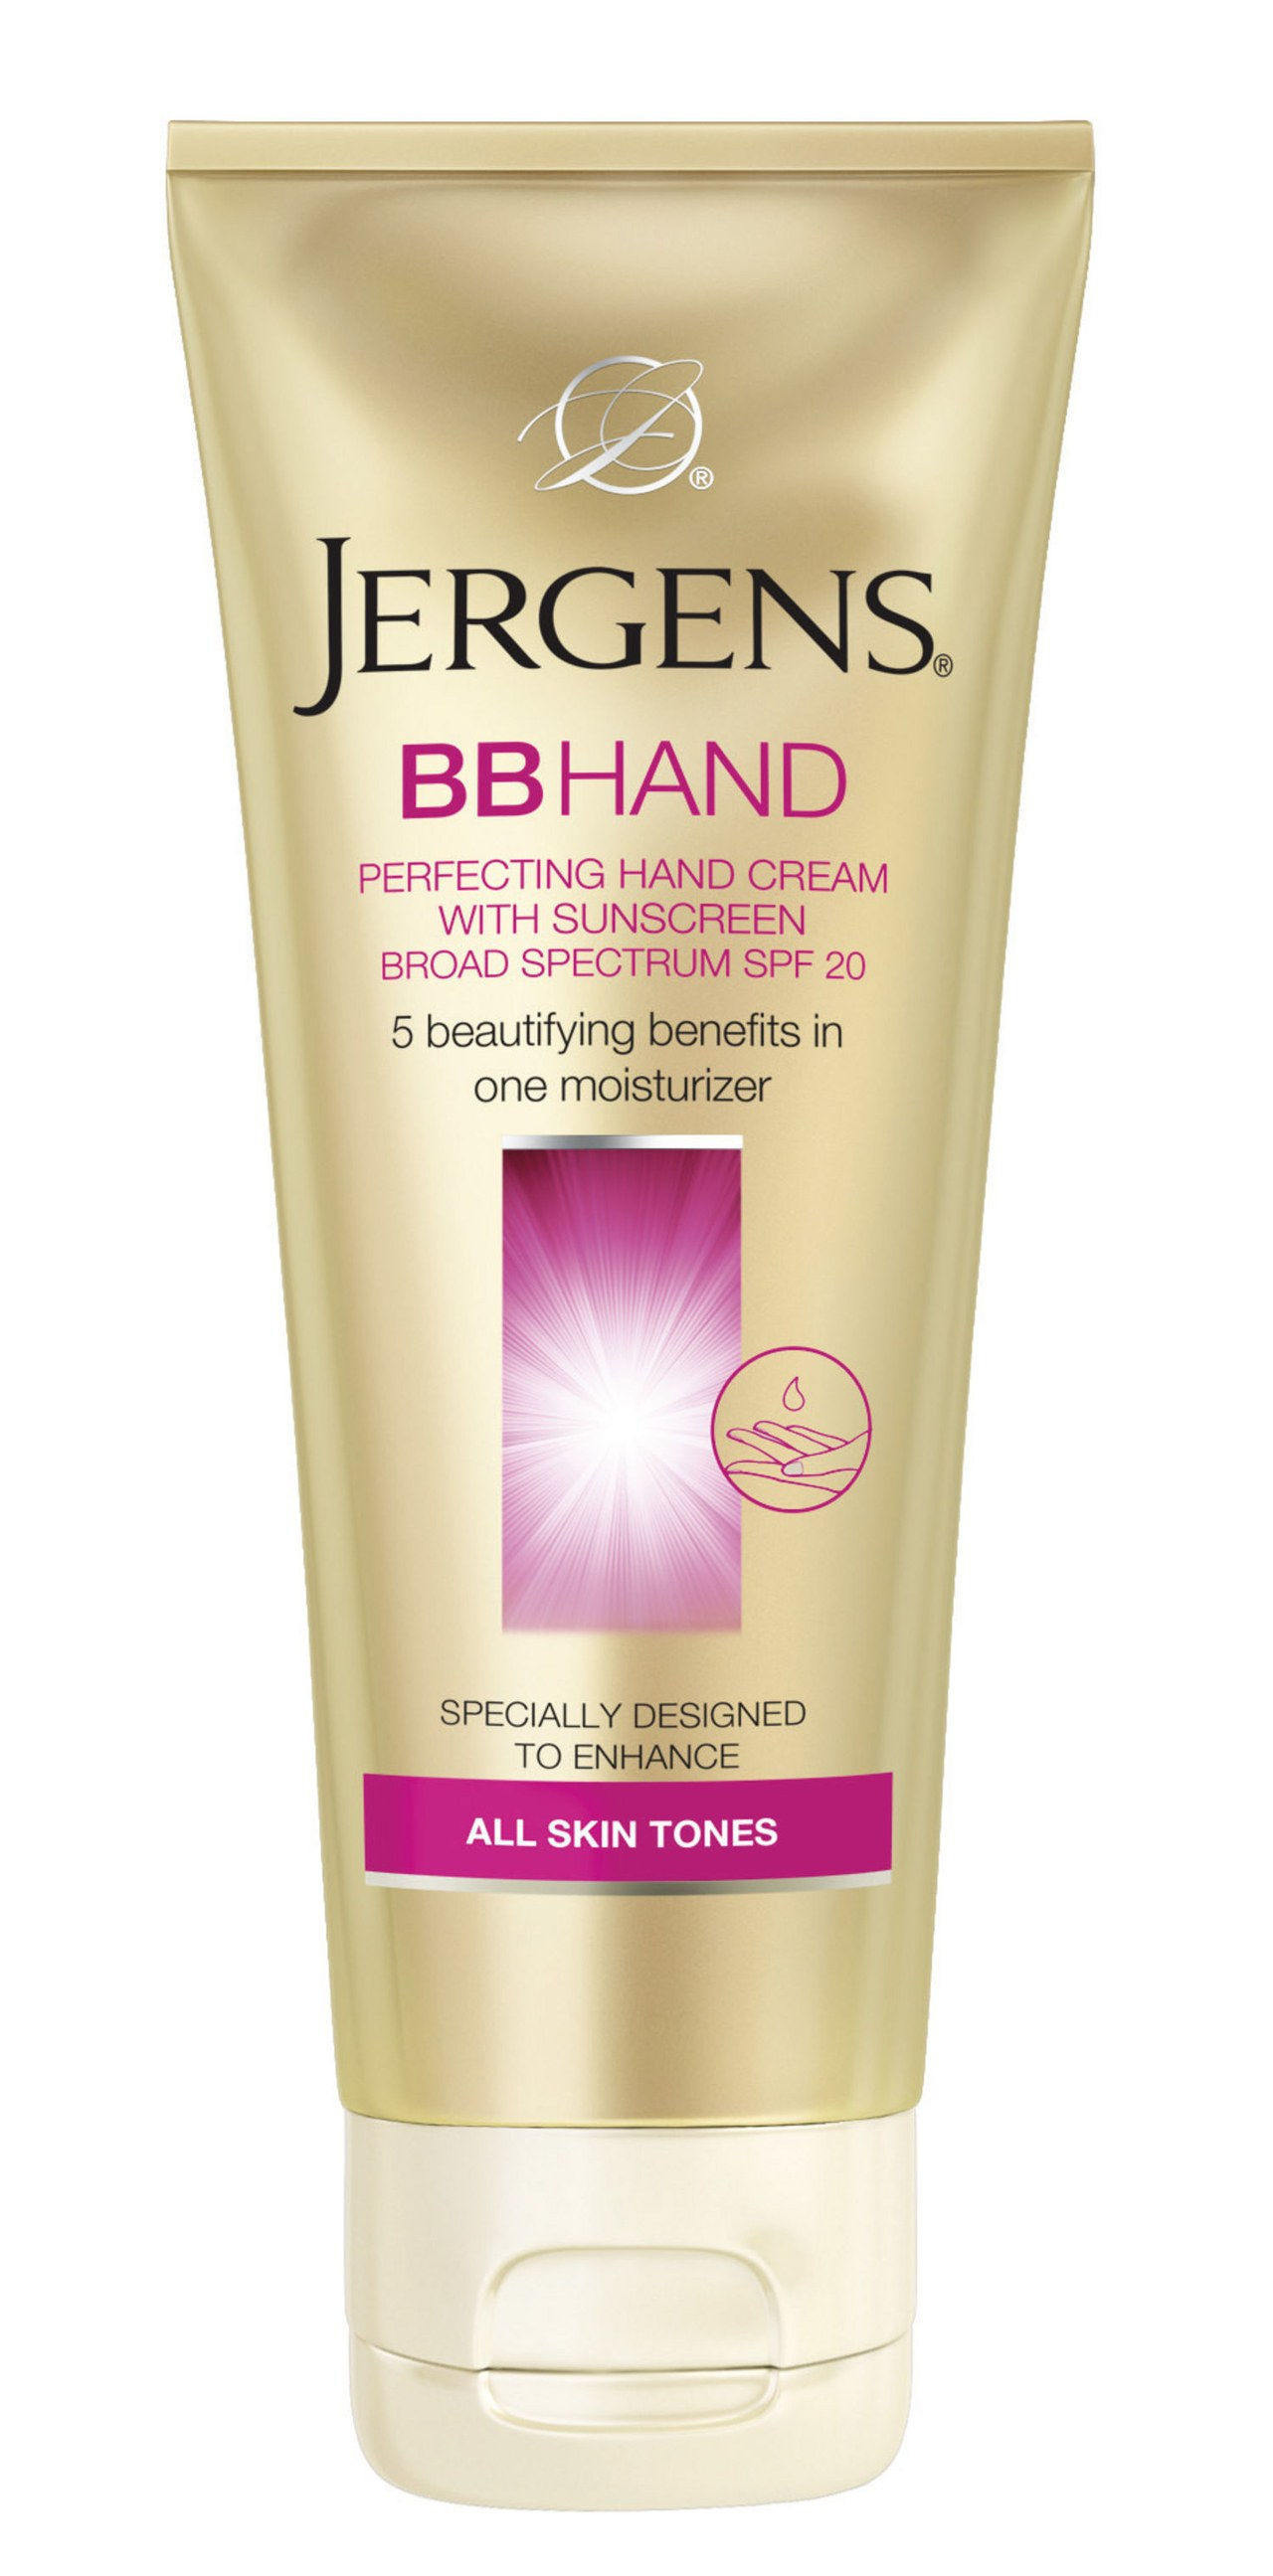 جرجنز bb hand cream 1